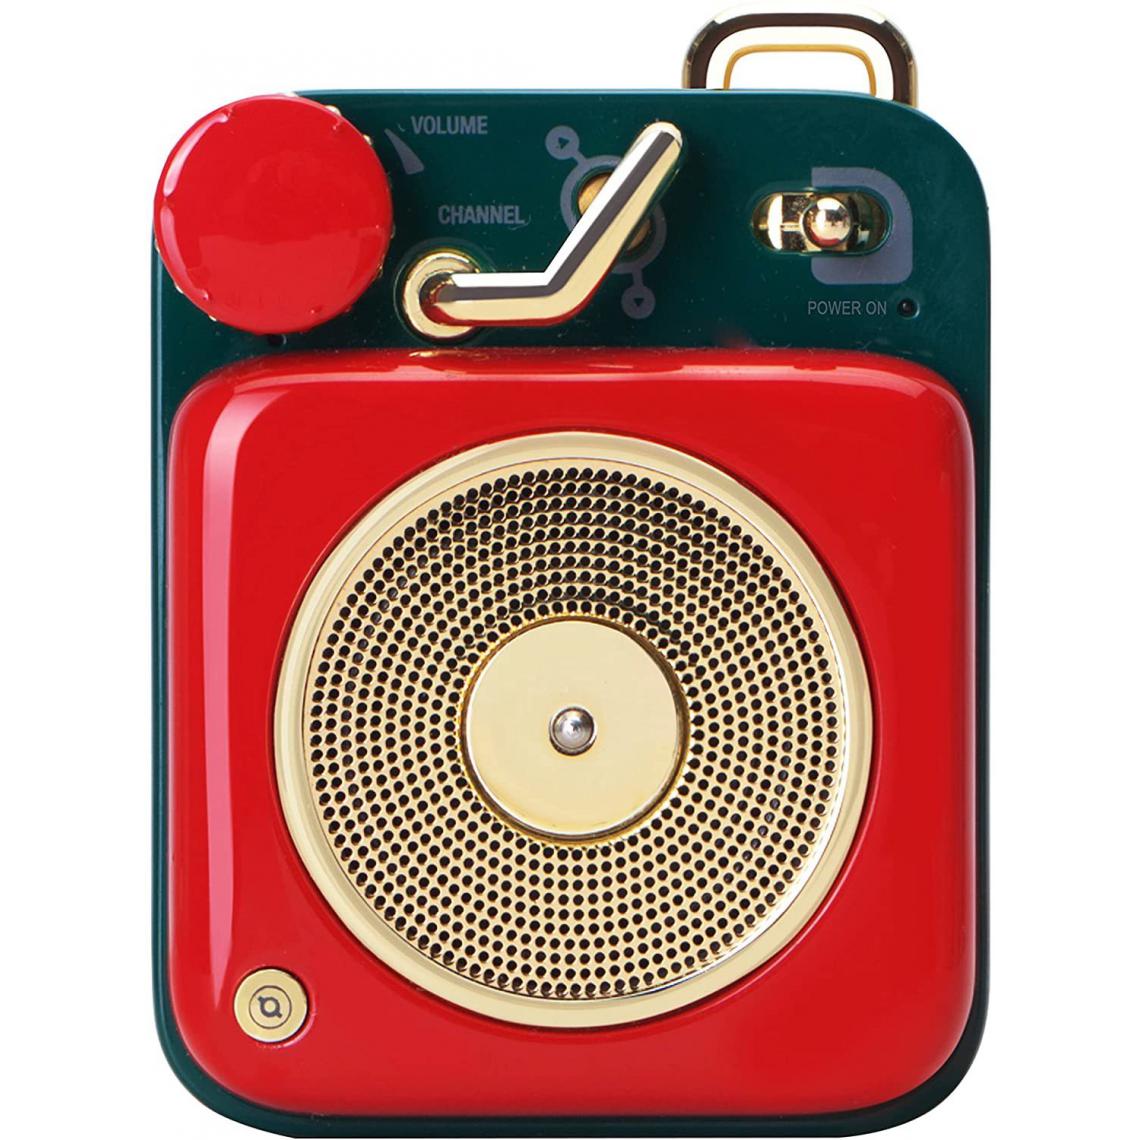 Chrono - Rétro Haut-Parleur Bluetooth- Button Haut-Parleur sans Fil Bluetooth-Portable Rétro Vintage Loudspeaker-Enceinte Portable Bluetooth pour Maison Bureau Cuisine Voyages et l'extérieur,Rouge - Enceintes Hifi